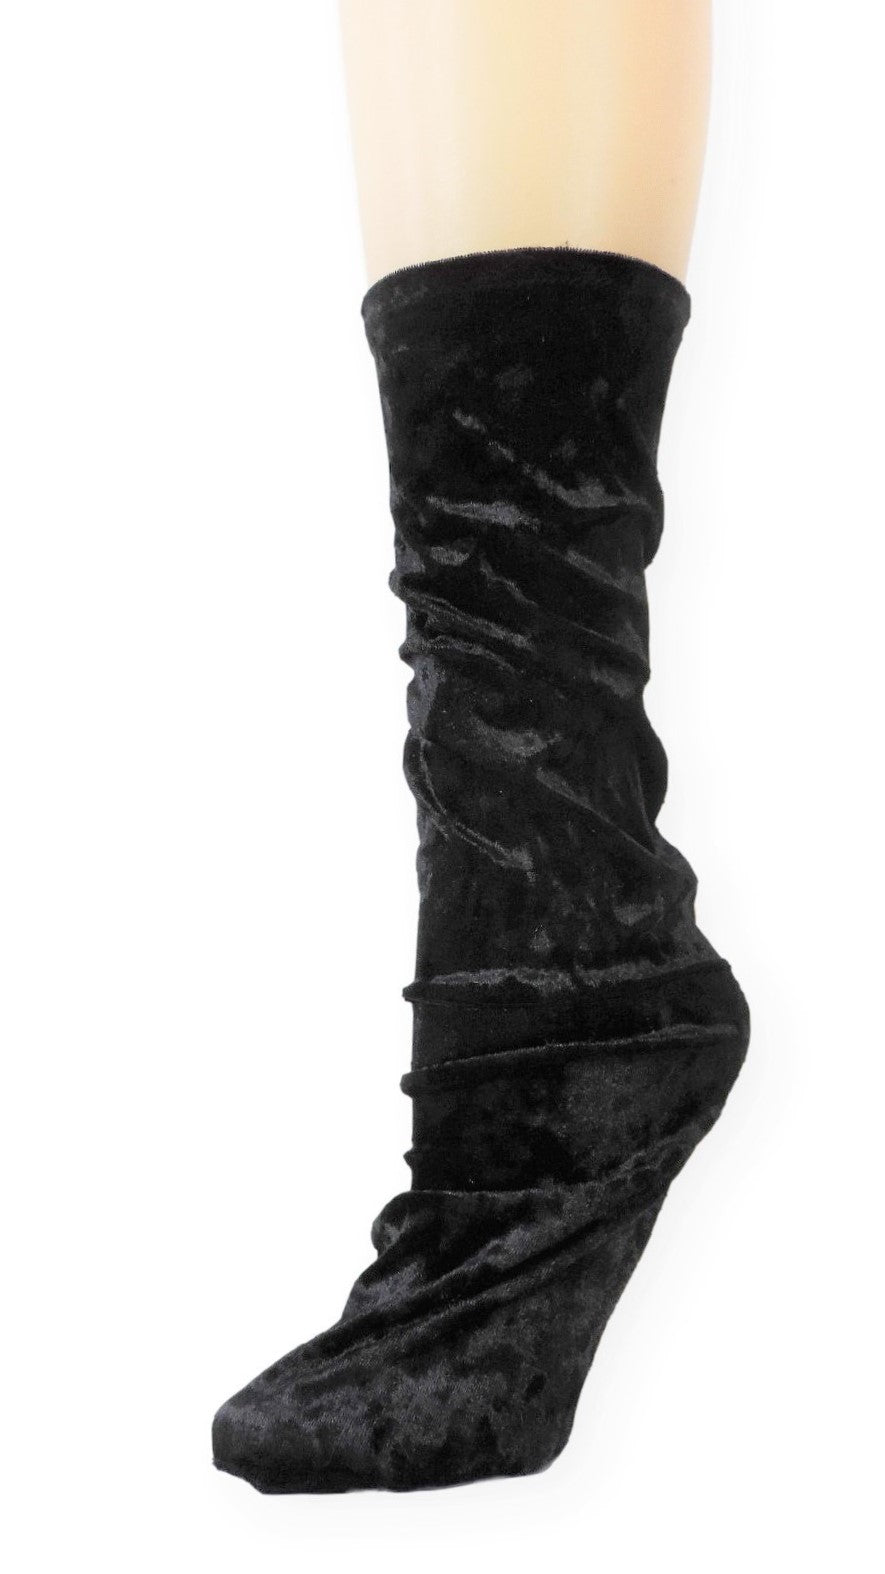 Black Crushed Velvet Socks - Global Trendz Fashion®